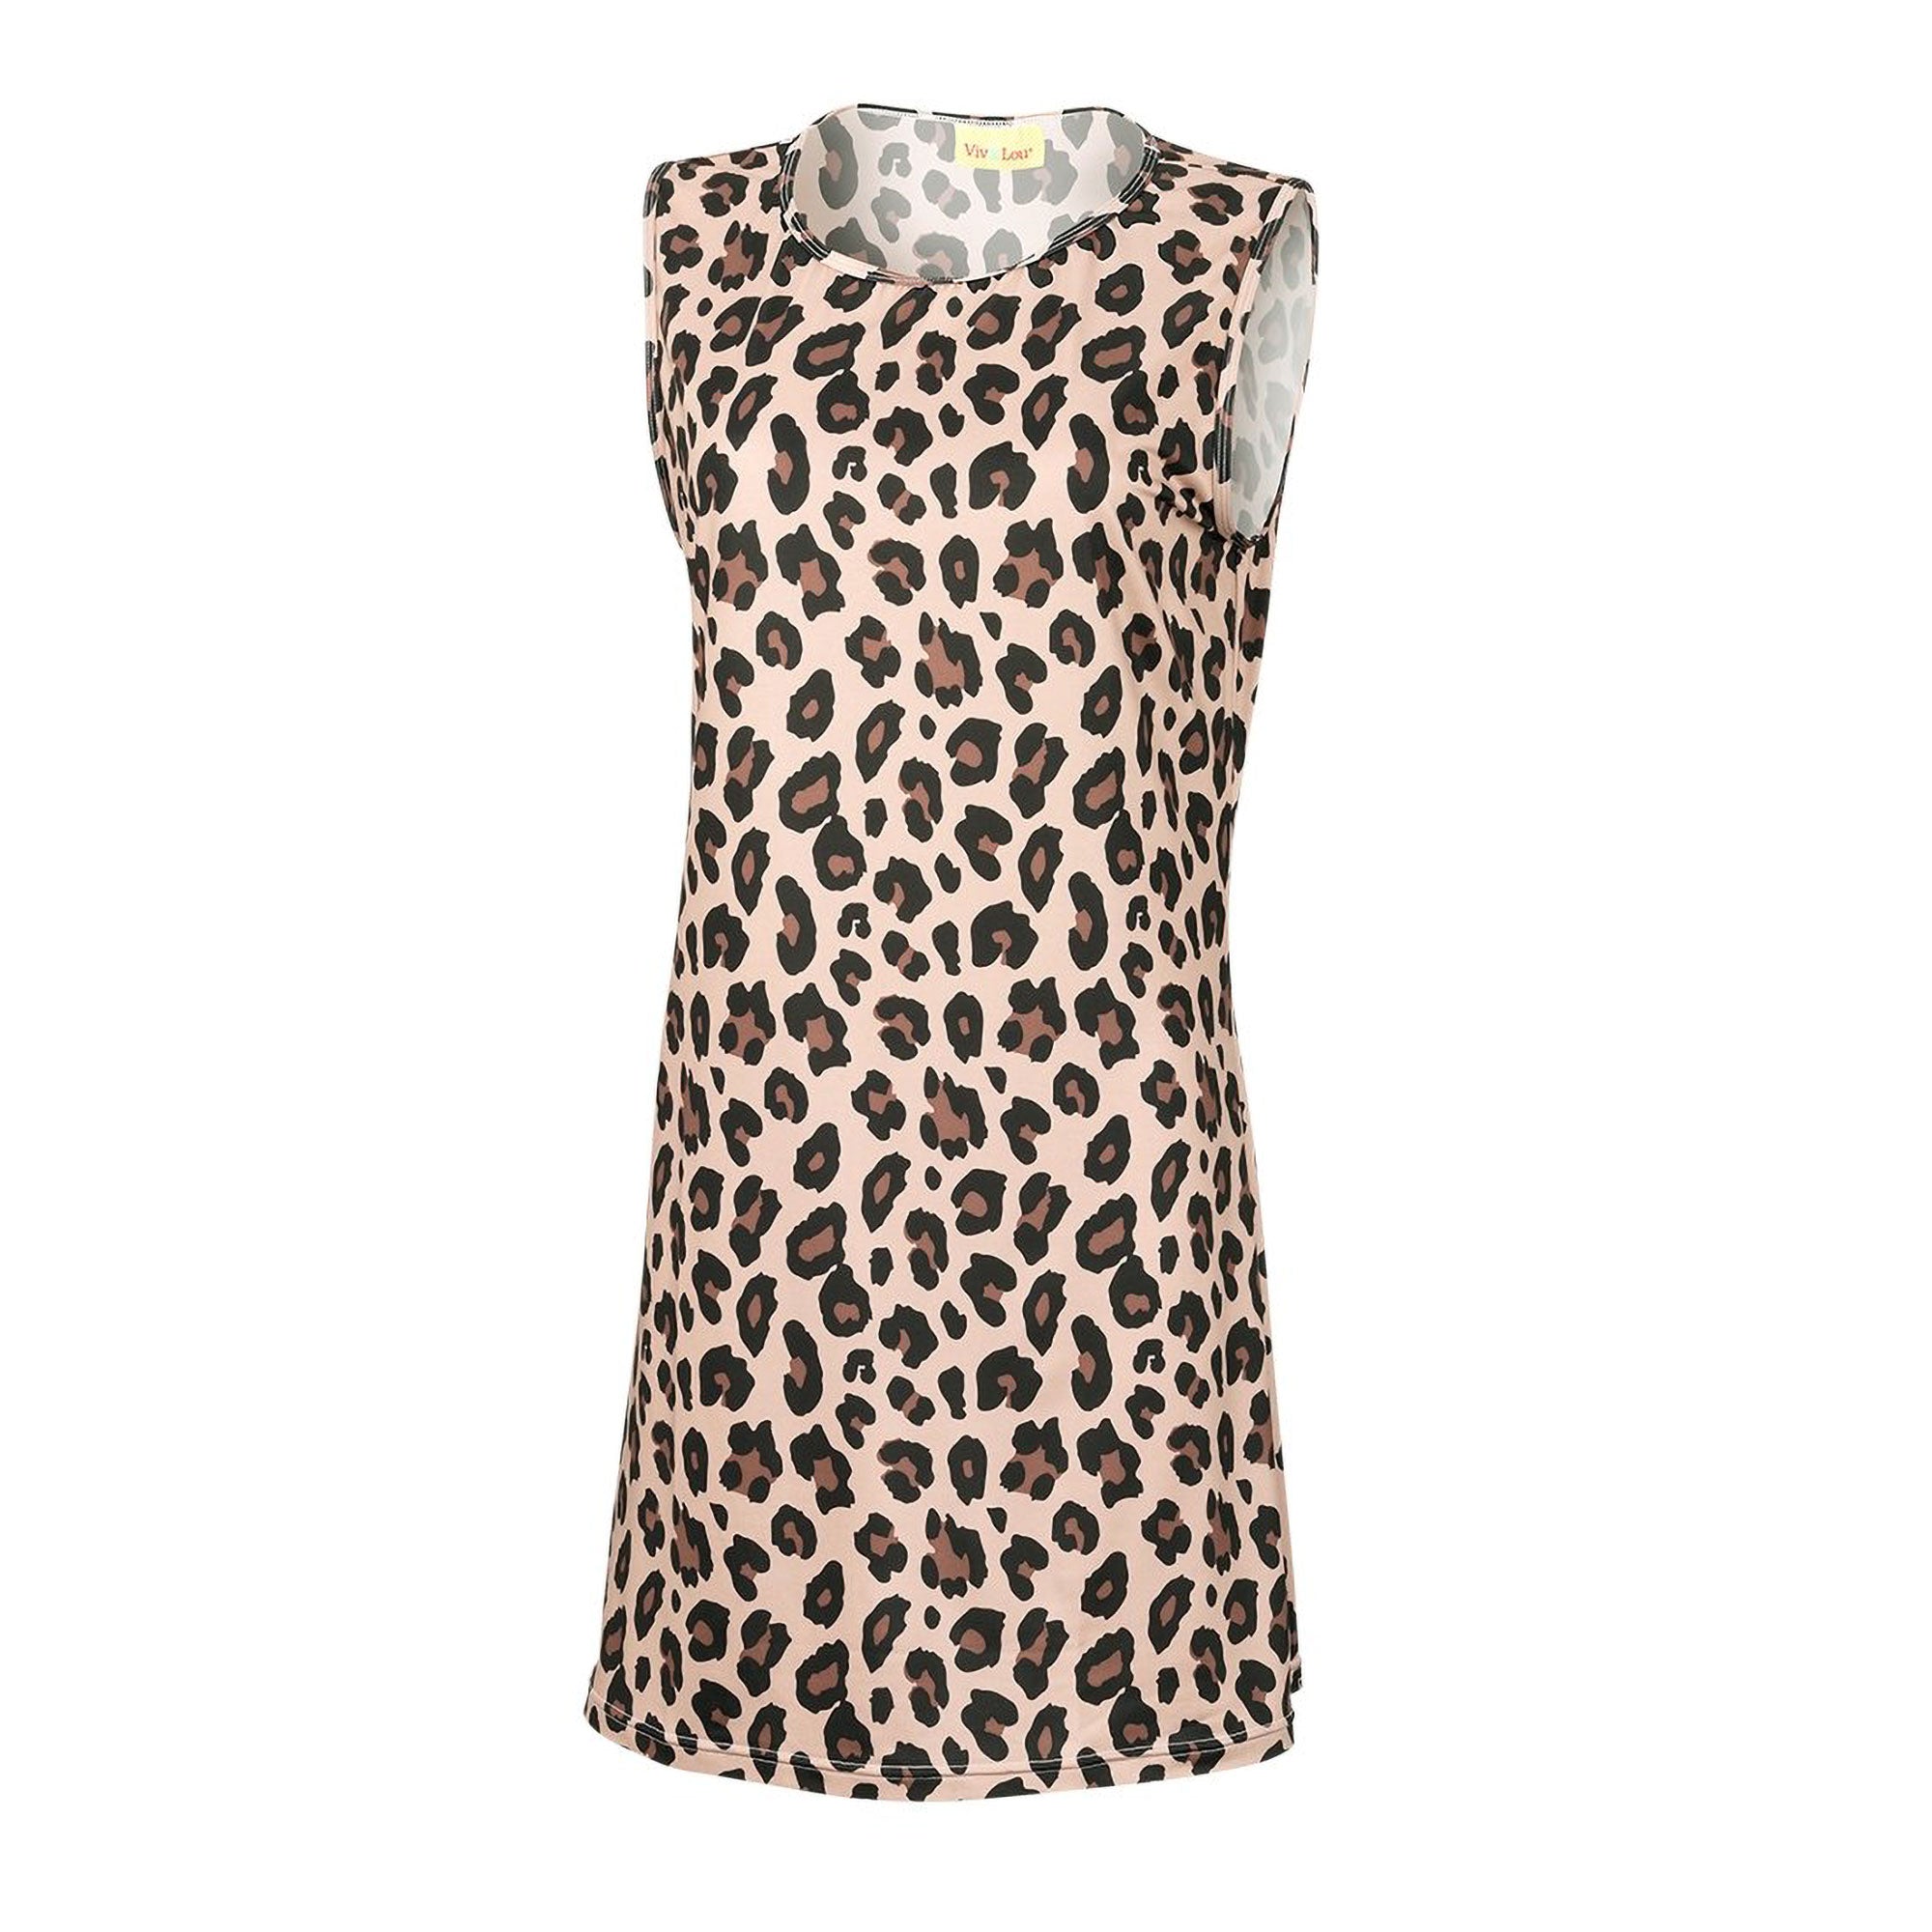 VIV&LOU Wild Side Leopard Dress - L/XL